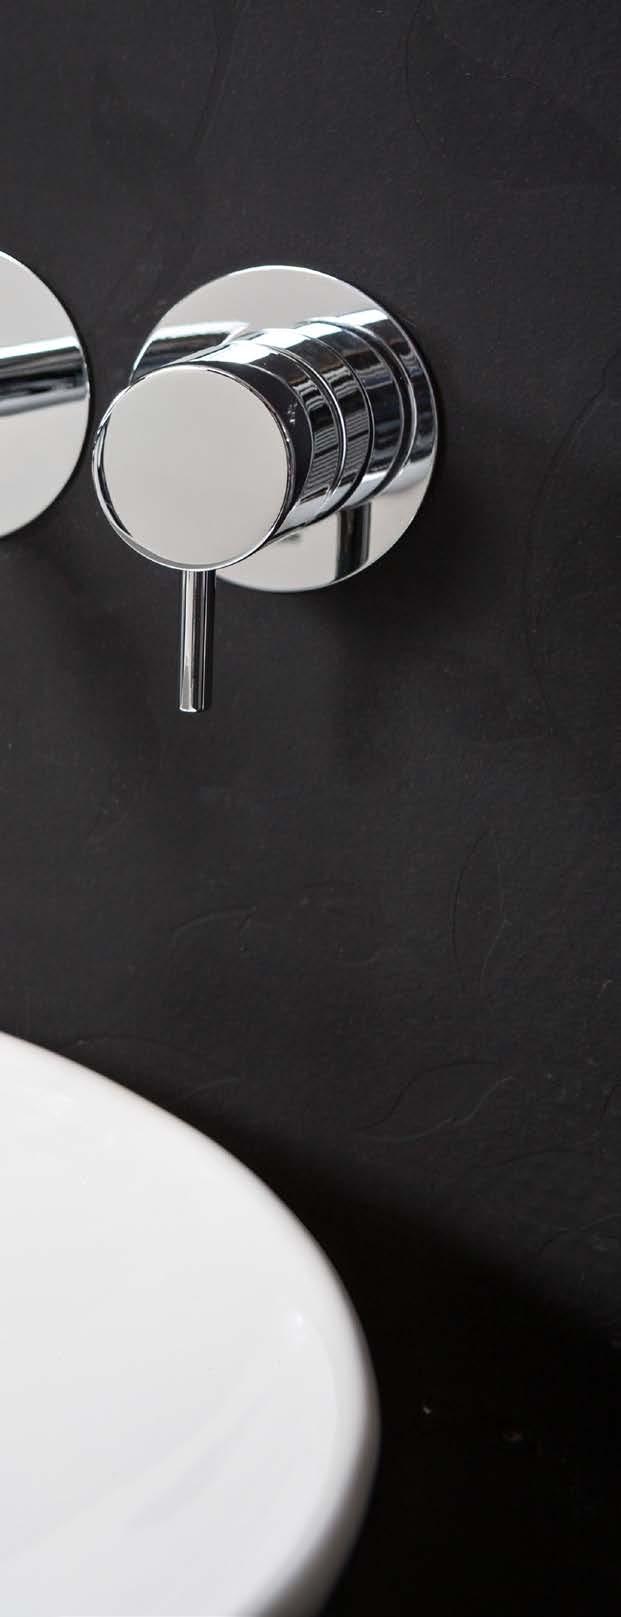 DUERO Duero collectie De altijd populaire kranencollectie Duero kenmerkt zich door haar ronde, strakke lijnen met een tijdloos design. Door het uiterlijk passen de kranen in elke badkamerinrichting.